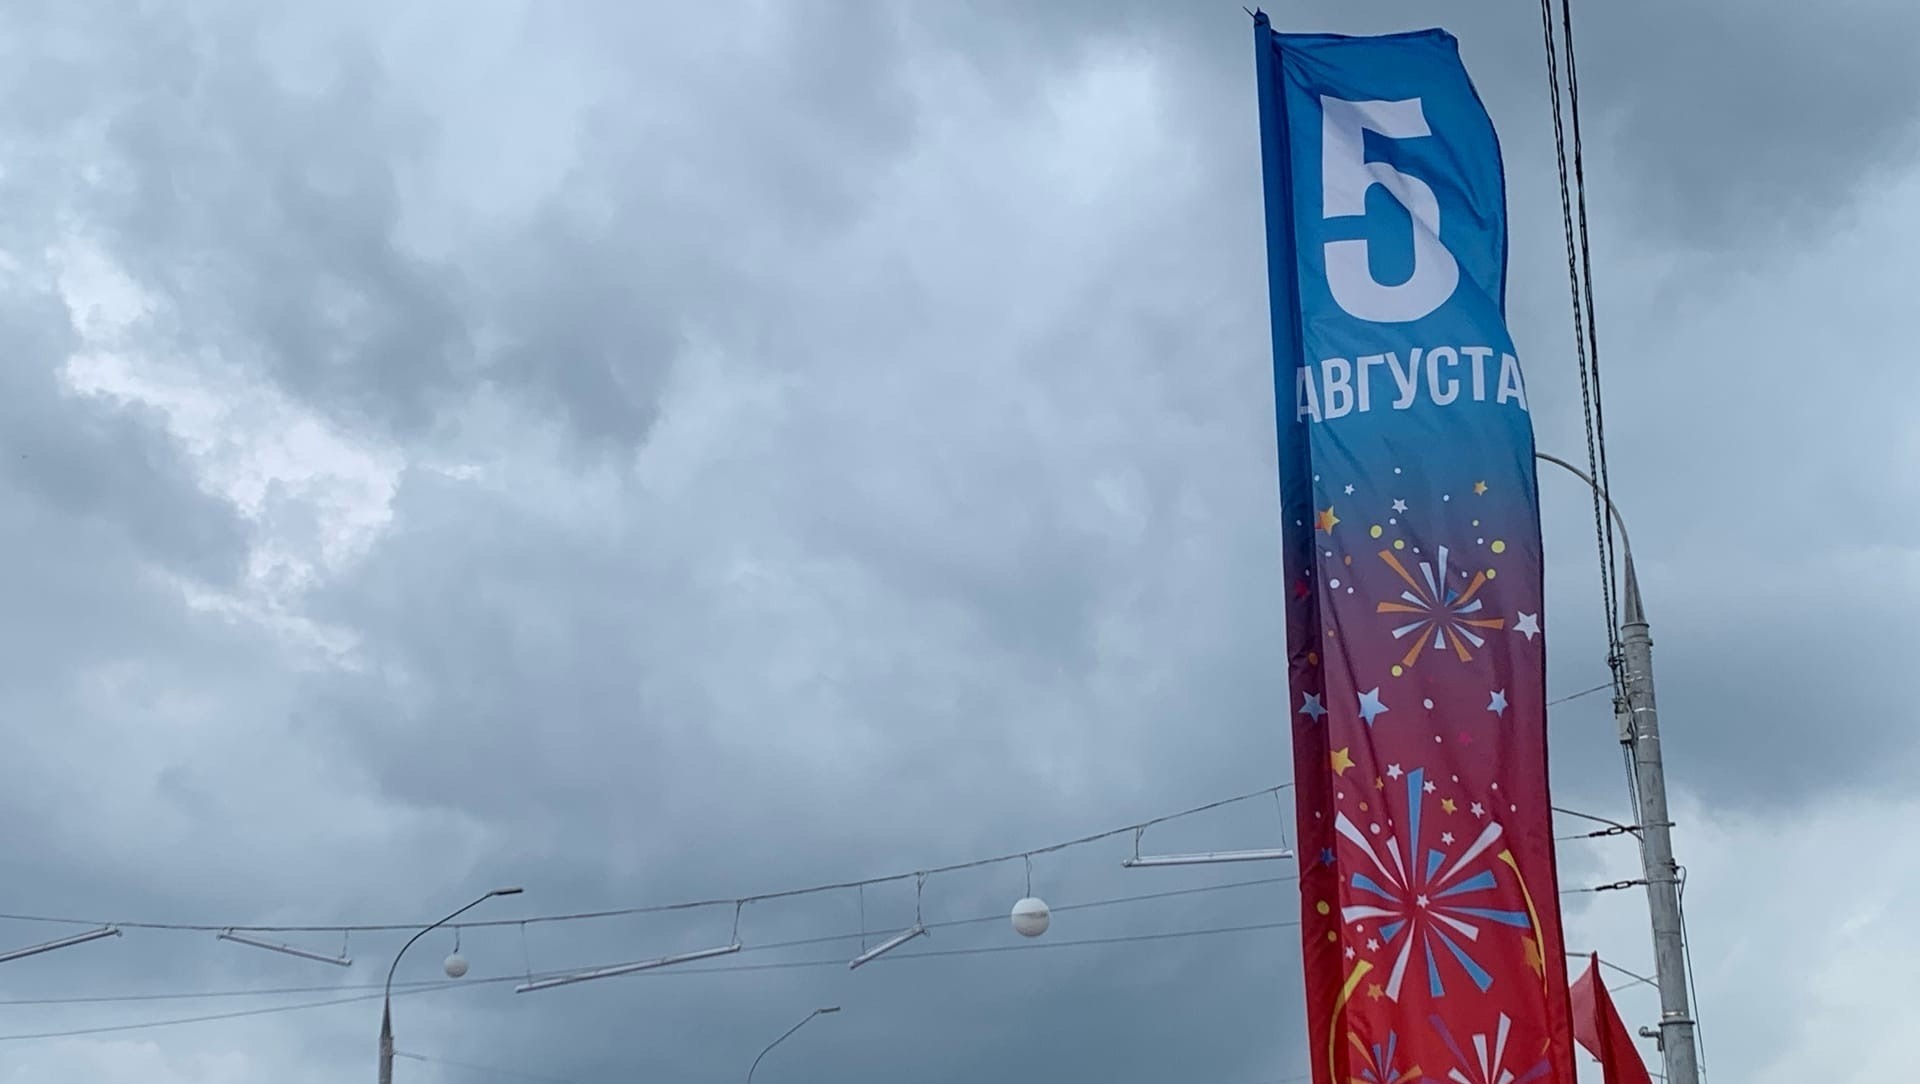 Подробная афиша празднования Дня города Белгорода 6 августа